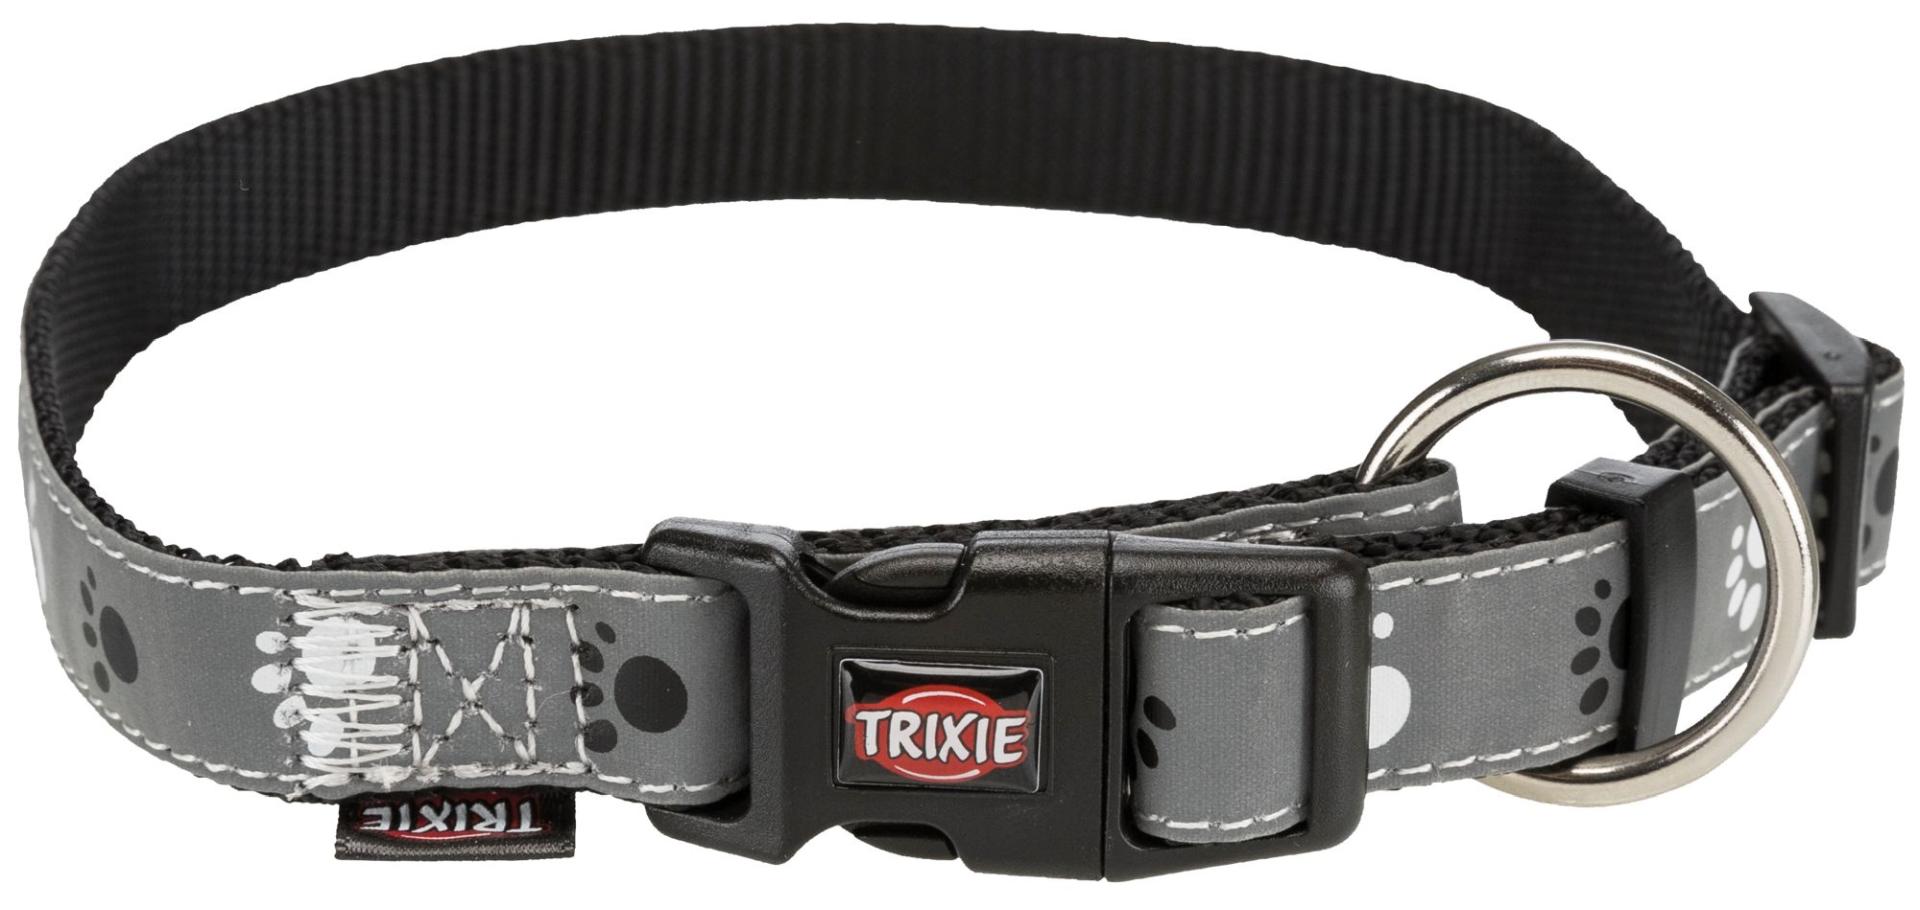 TRIXIE Silver Reflect Halsband, S–M: 30–45 cm / 15 mm, schwarz / silbergrau